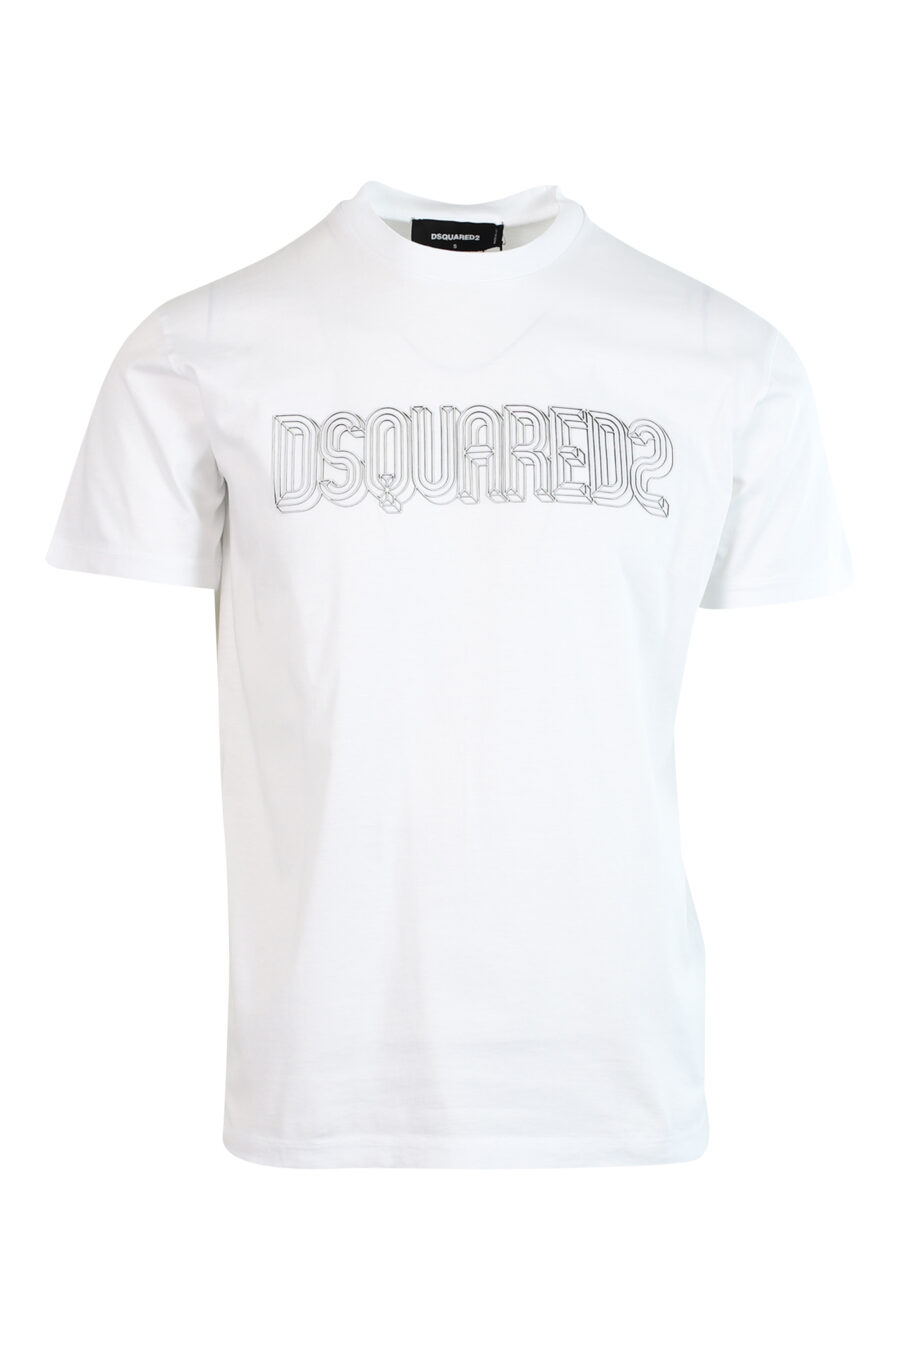 T-shirt blanc avec logo monochrome - 8052134946381